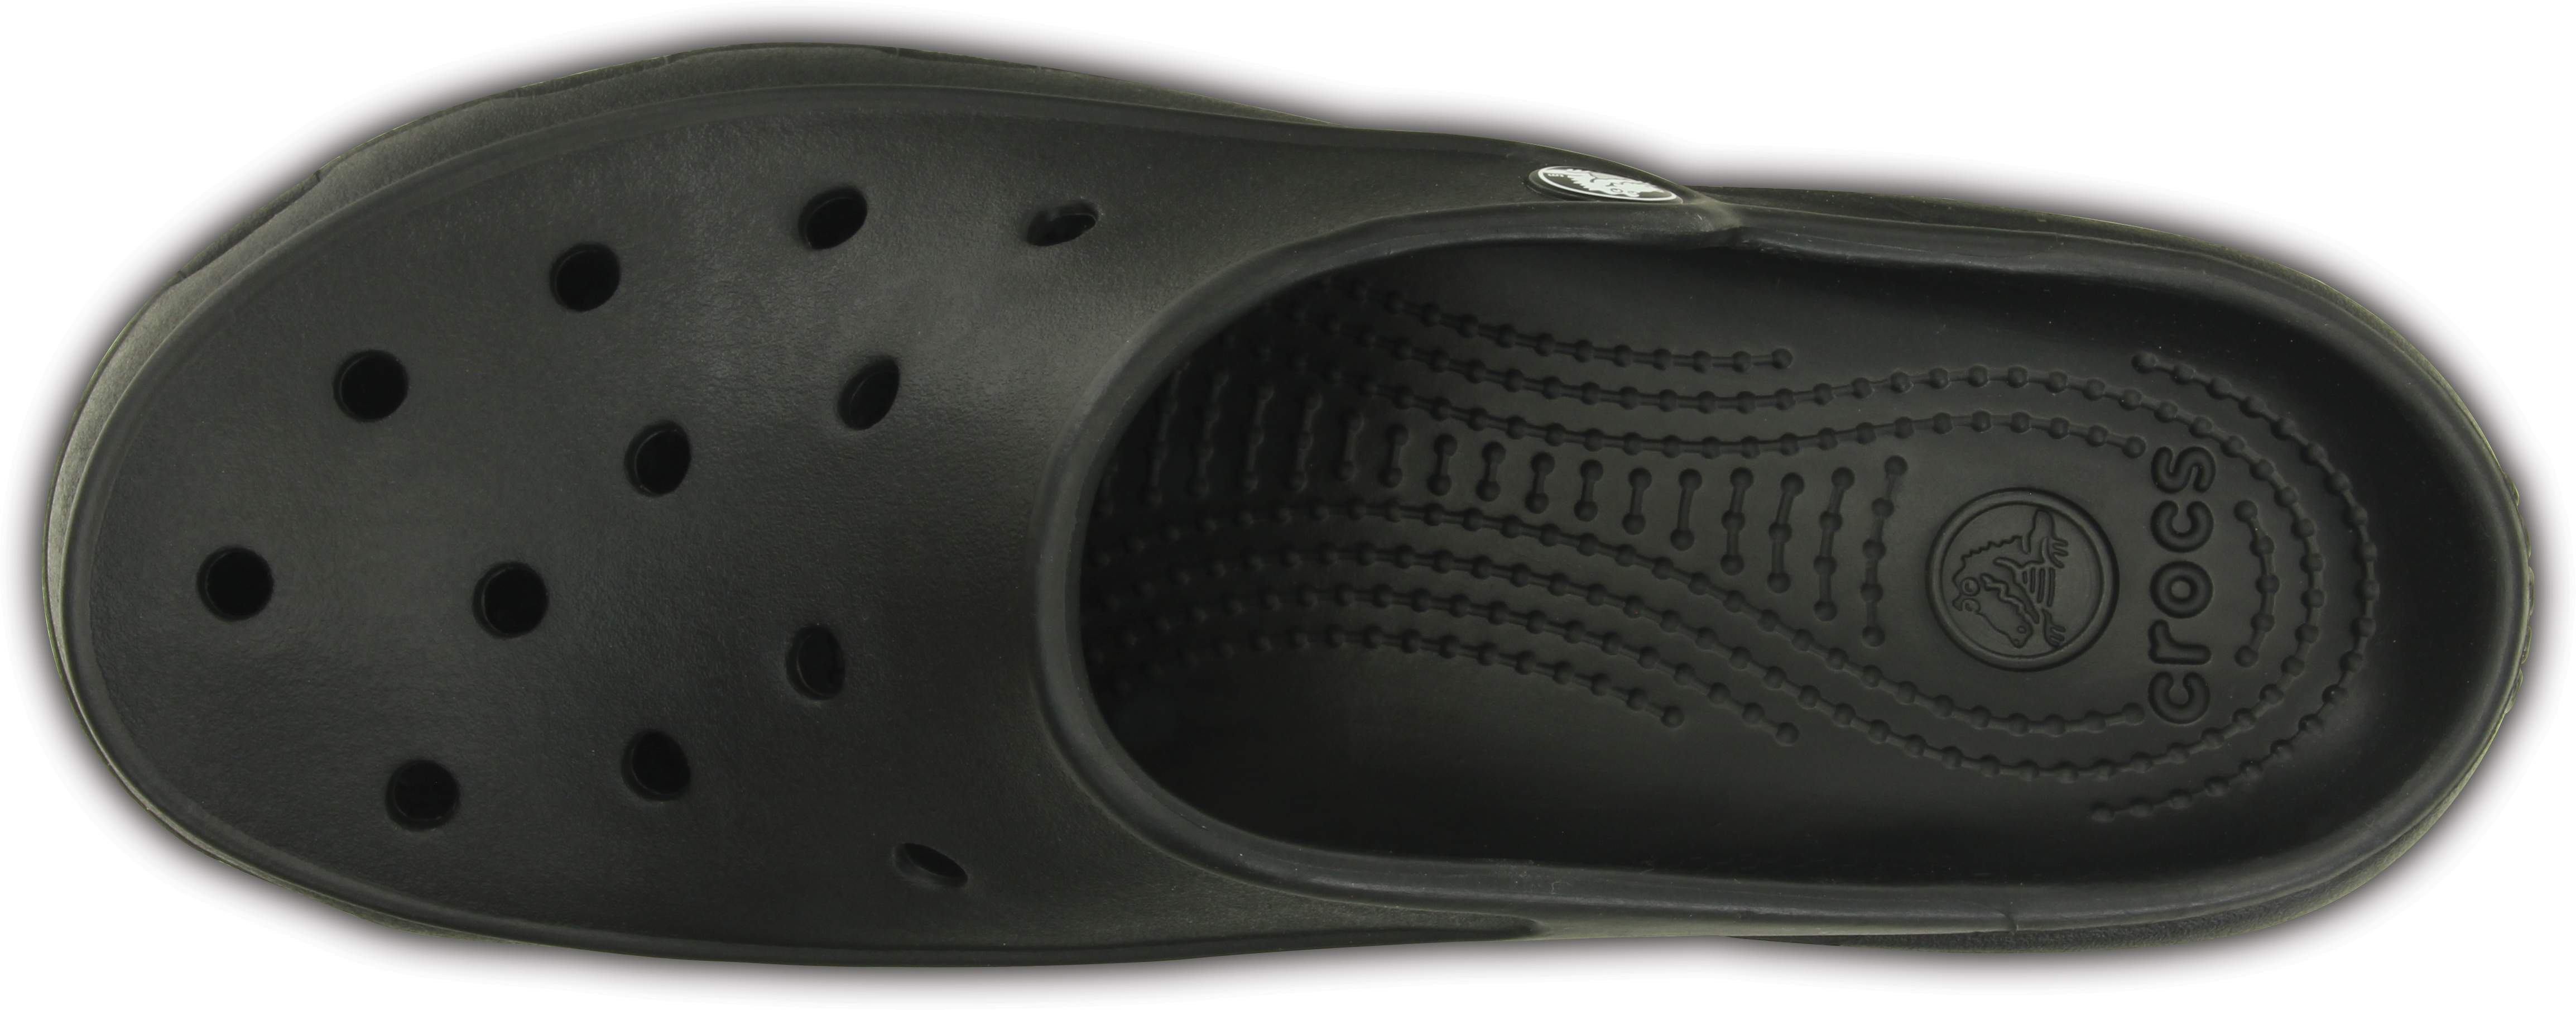 crocs with no strap